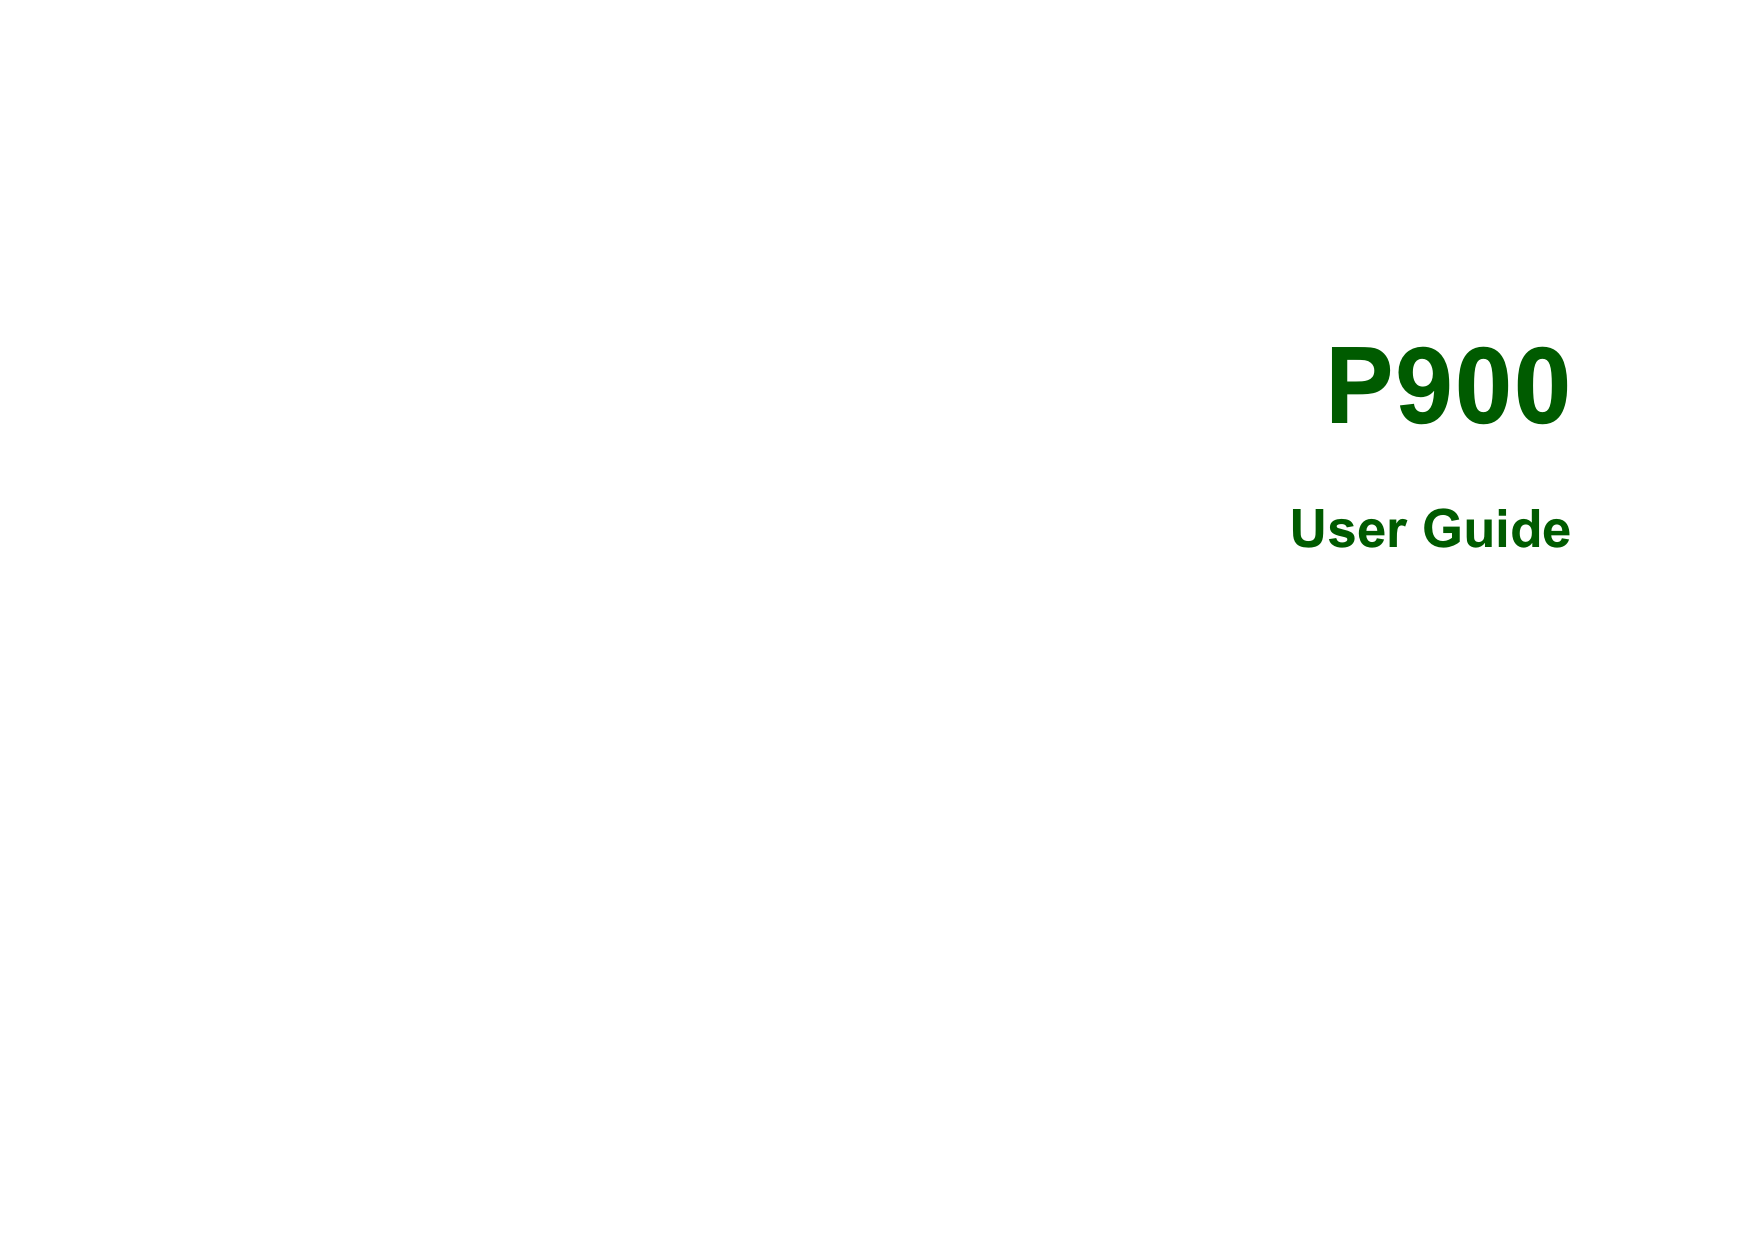   P900User Guide